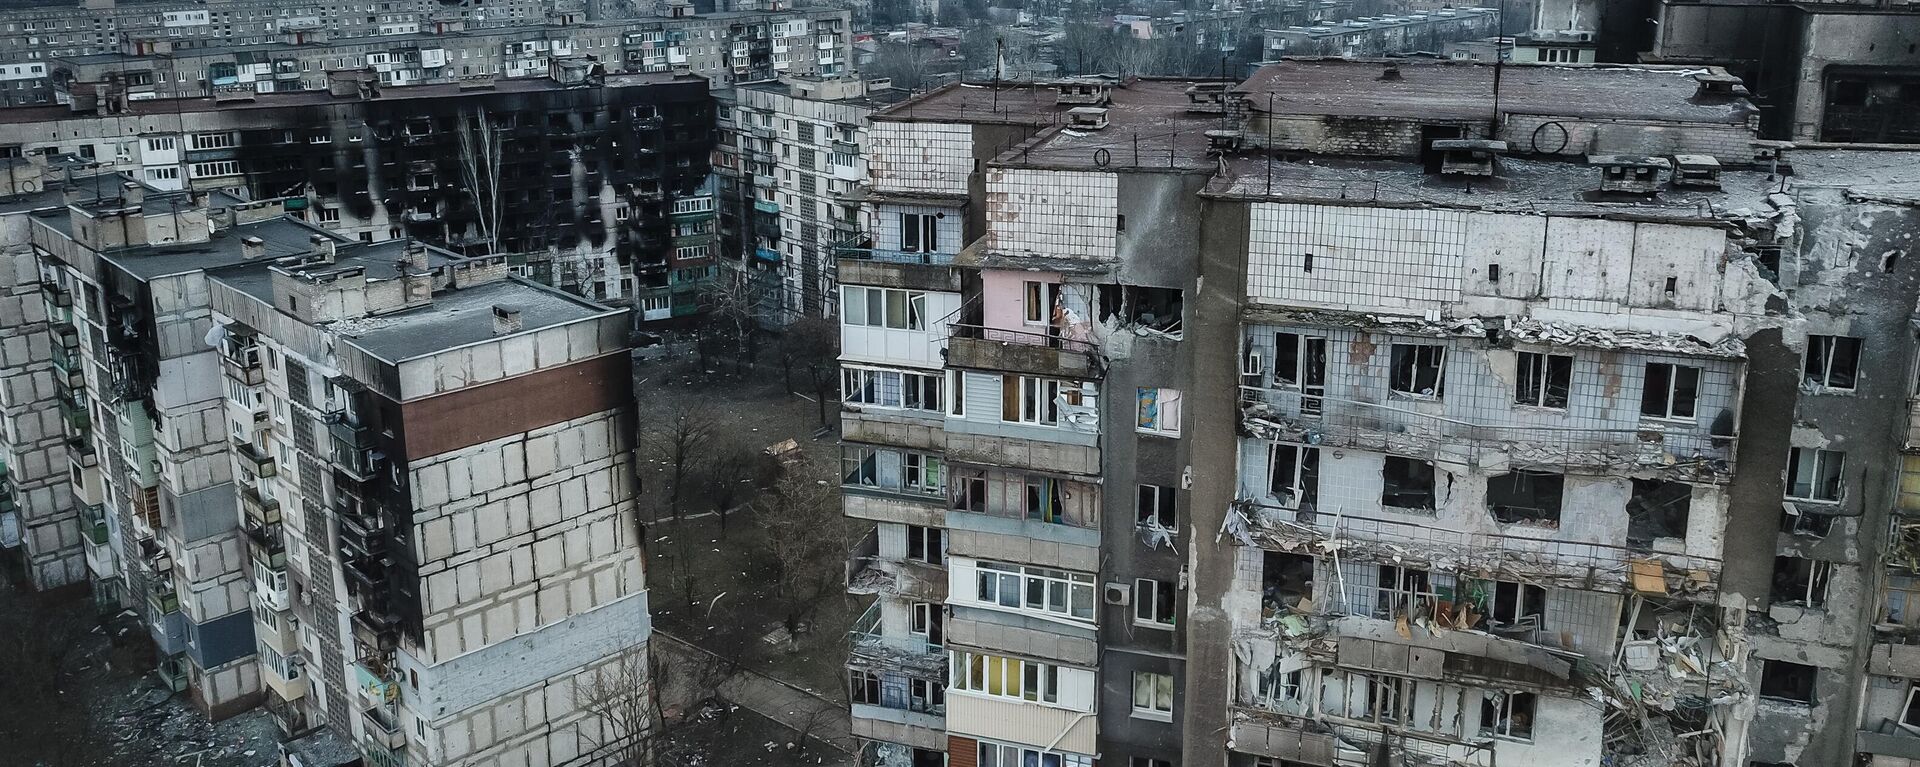 Những ngôi nhà bị phá hủy ở Mariupol. - Sputnik Việt Nam, 1920, 29.03.2022